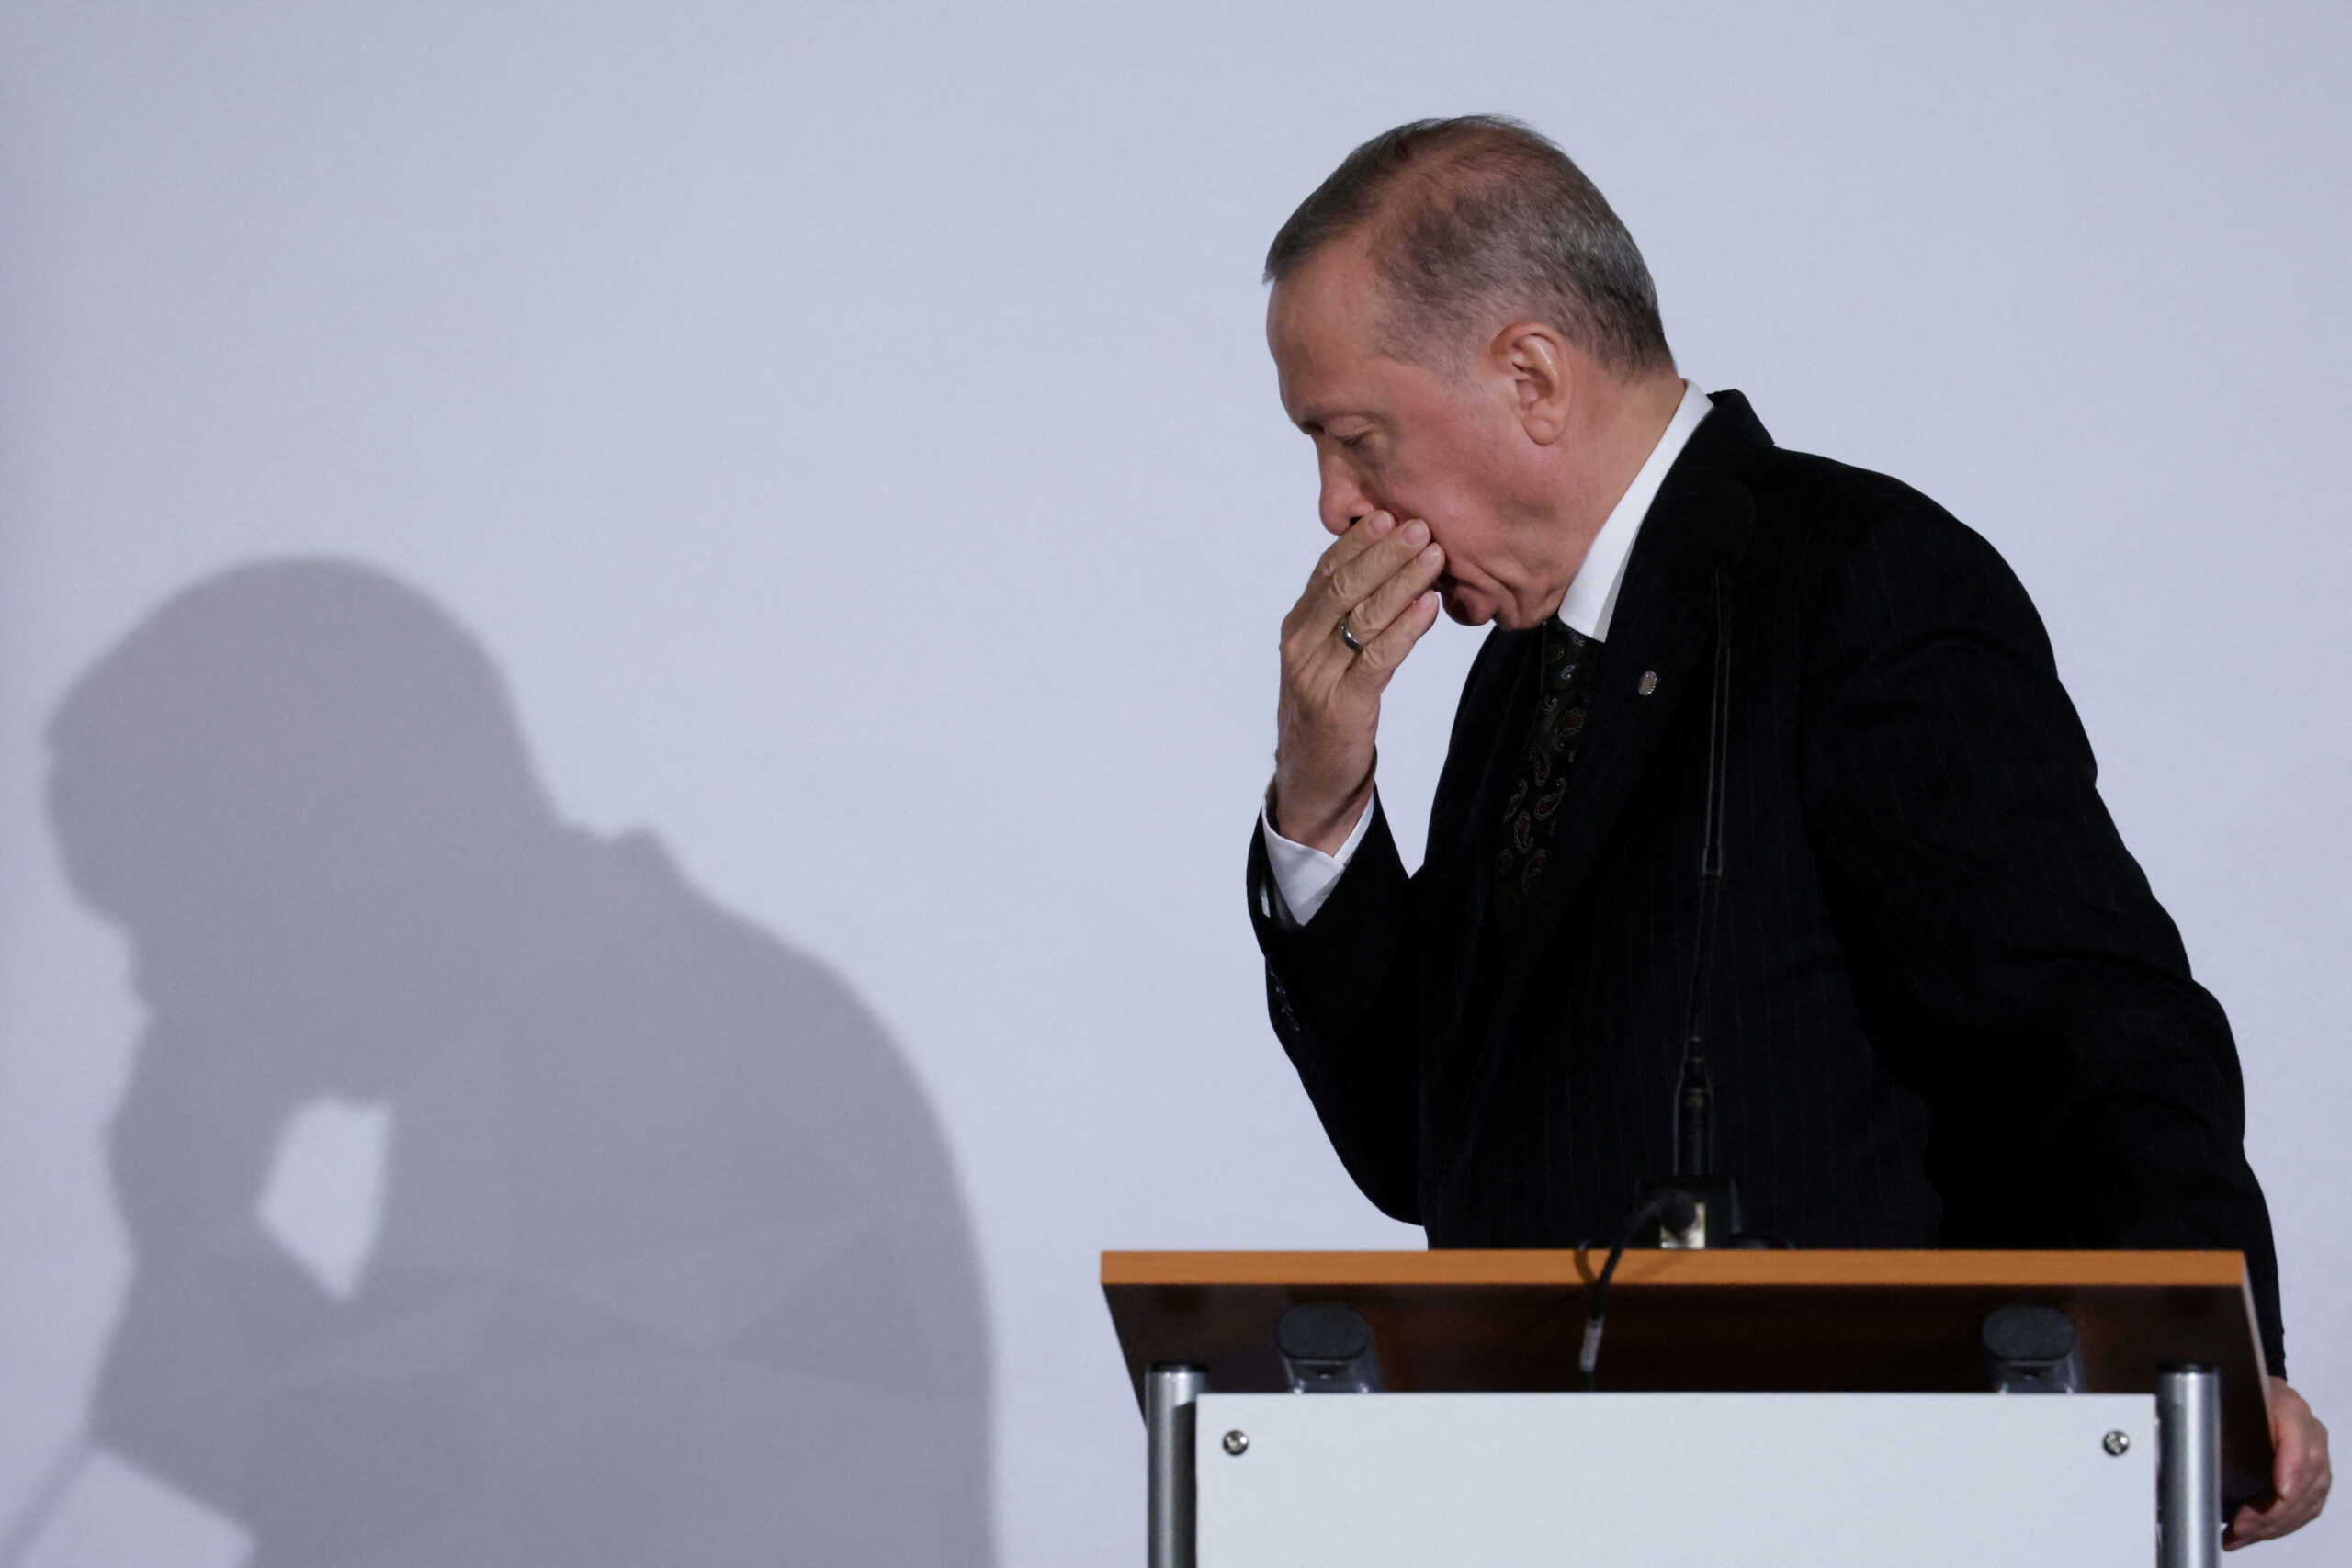 Ρετζέπ Ταγίπ Ερντογάν: «Πρώτος του στόχος οι εκλογές, όχι η αναβίωση της οθωμανικής αυτοκρατορίας»